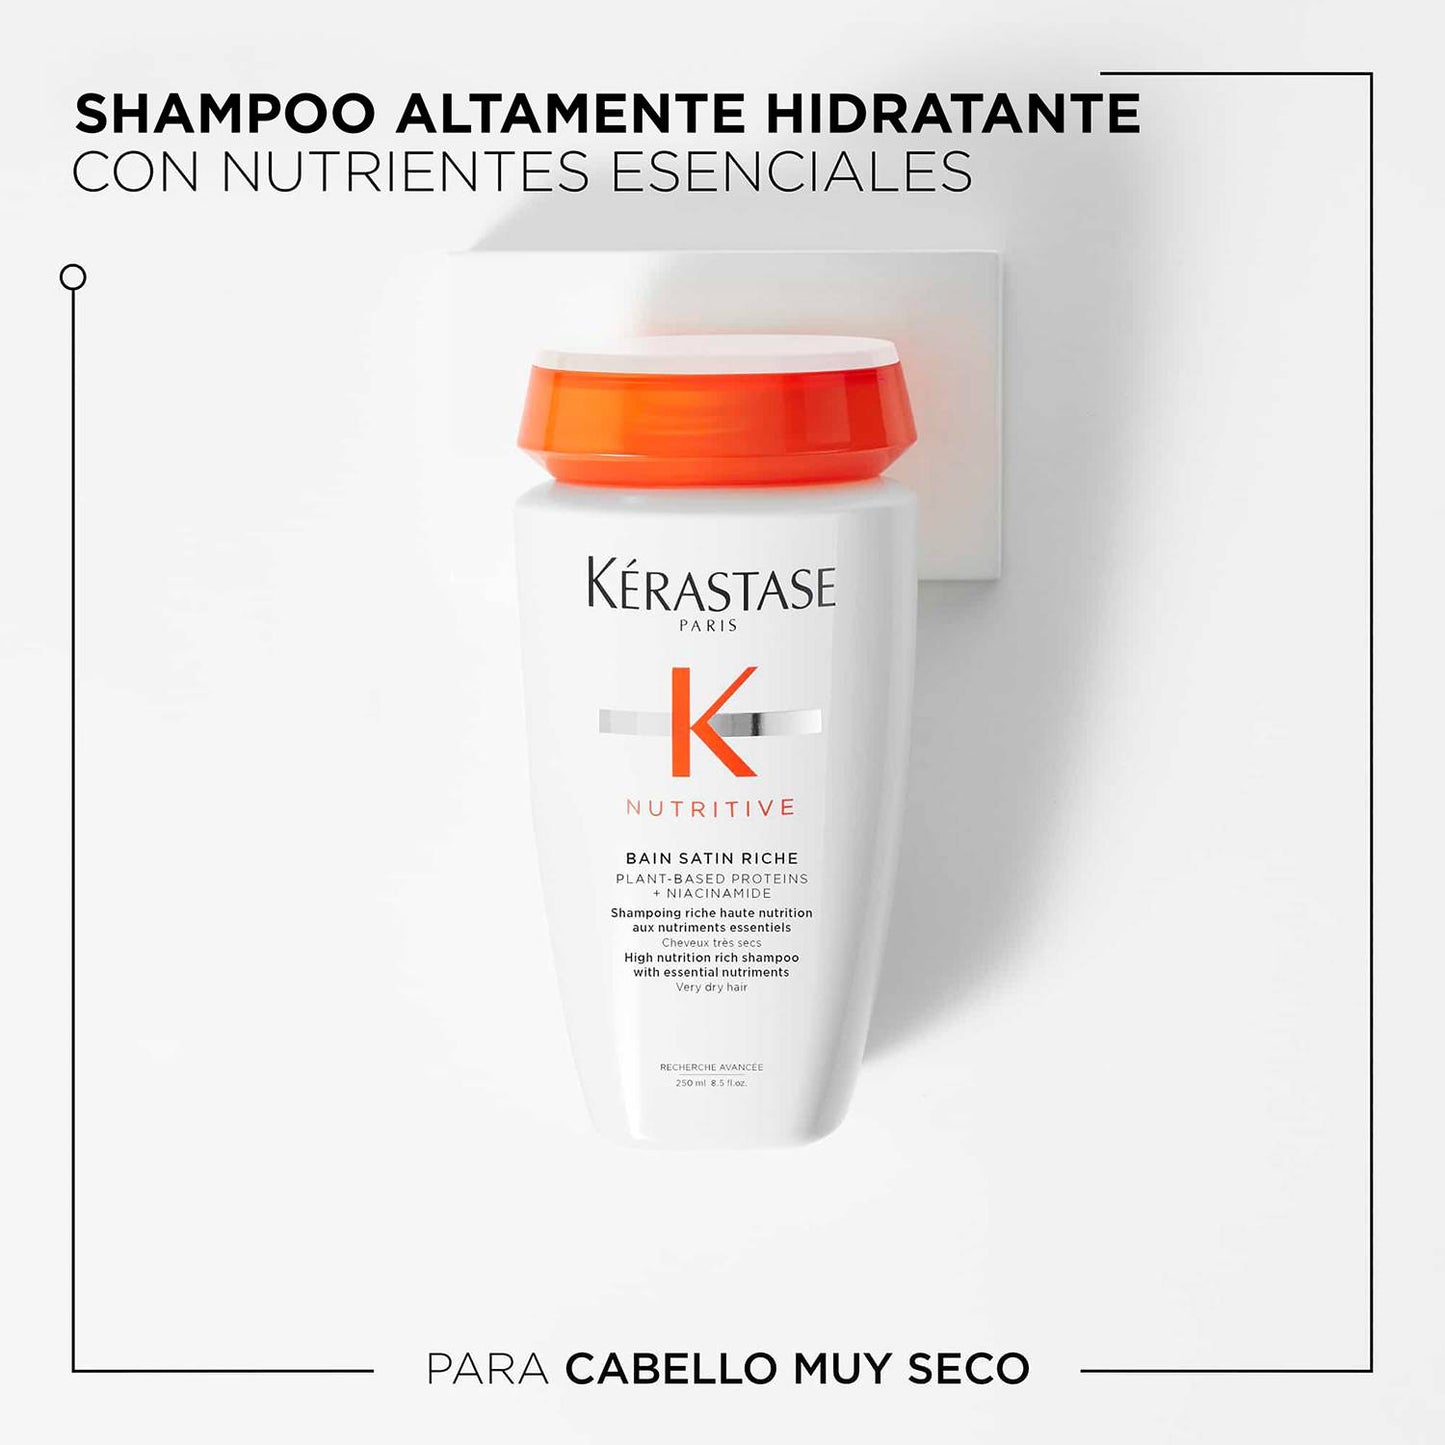 Shampoo Bain Satin Riche Kérastase Nutritive Para Una Nutrición Intensa Del Cabello 250ml